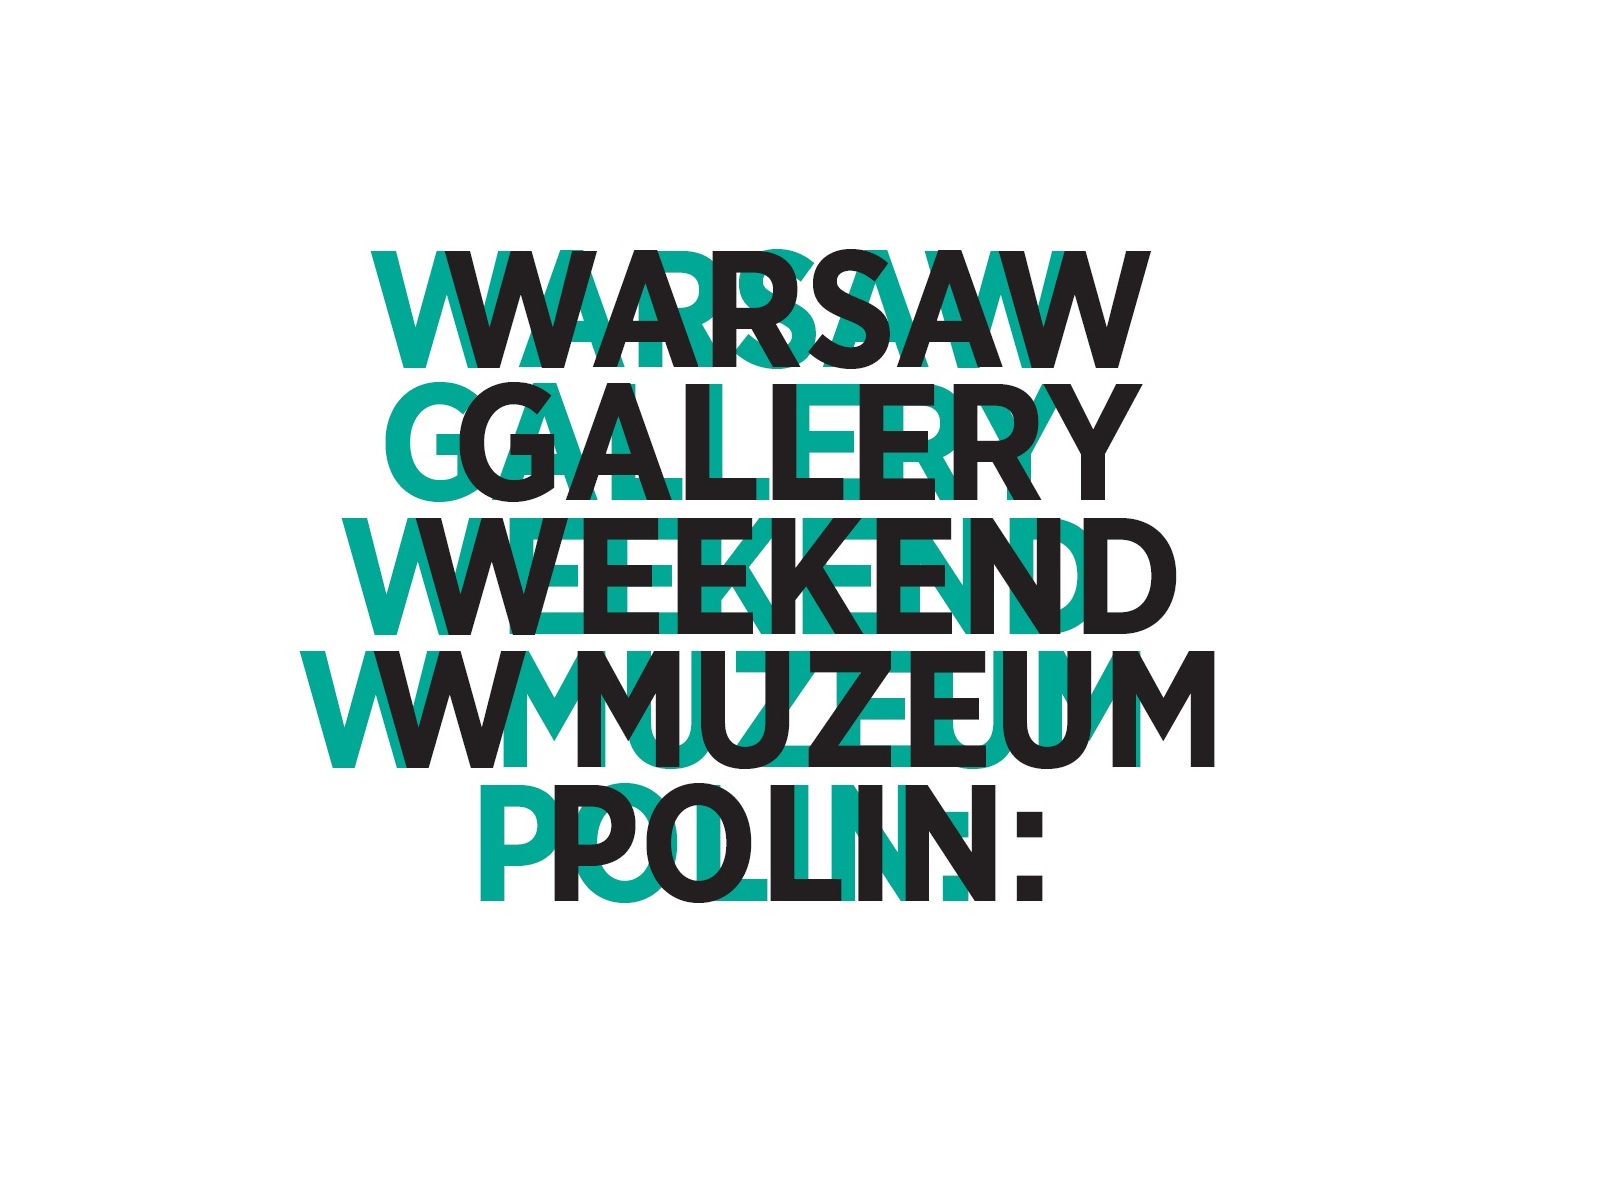 Warsaw Gallery Weekend 2017